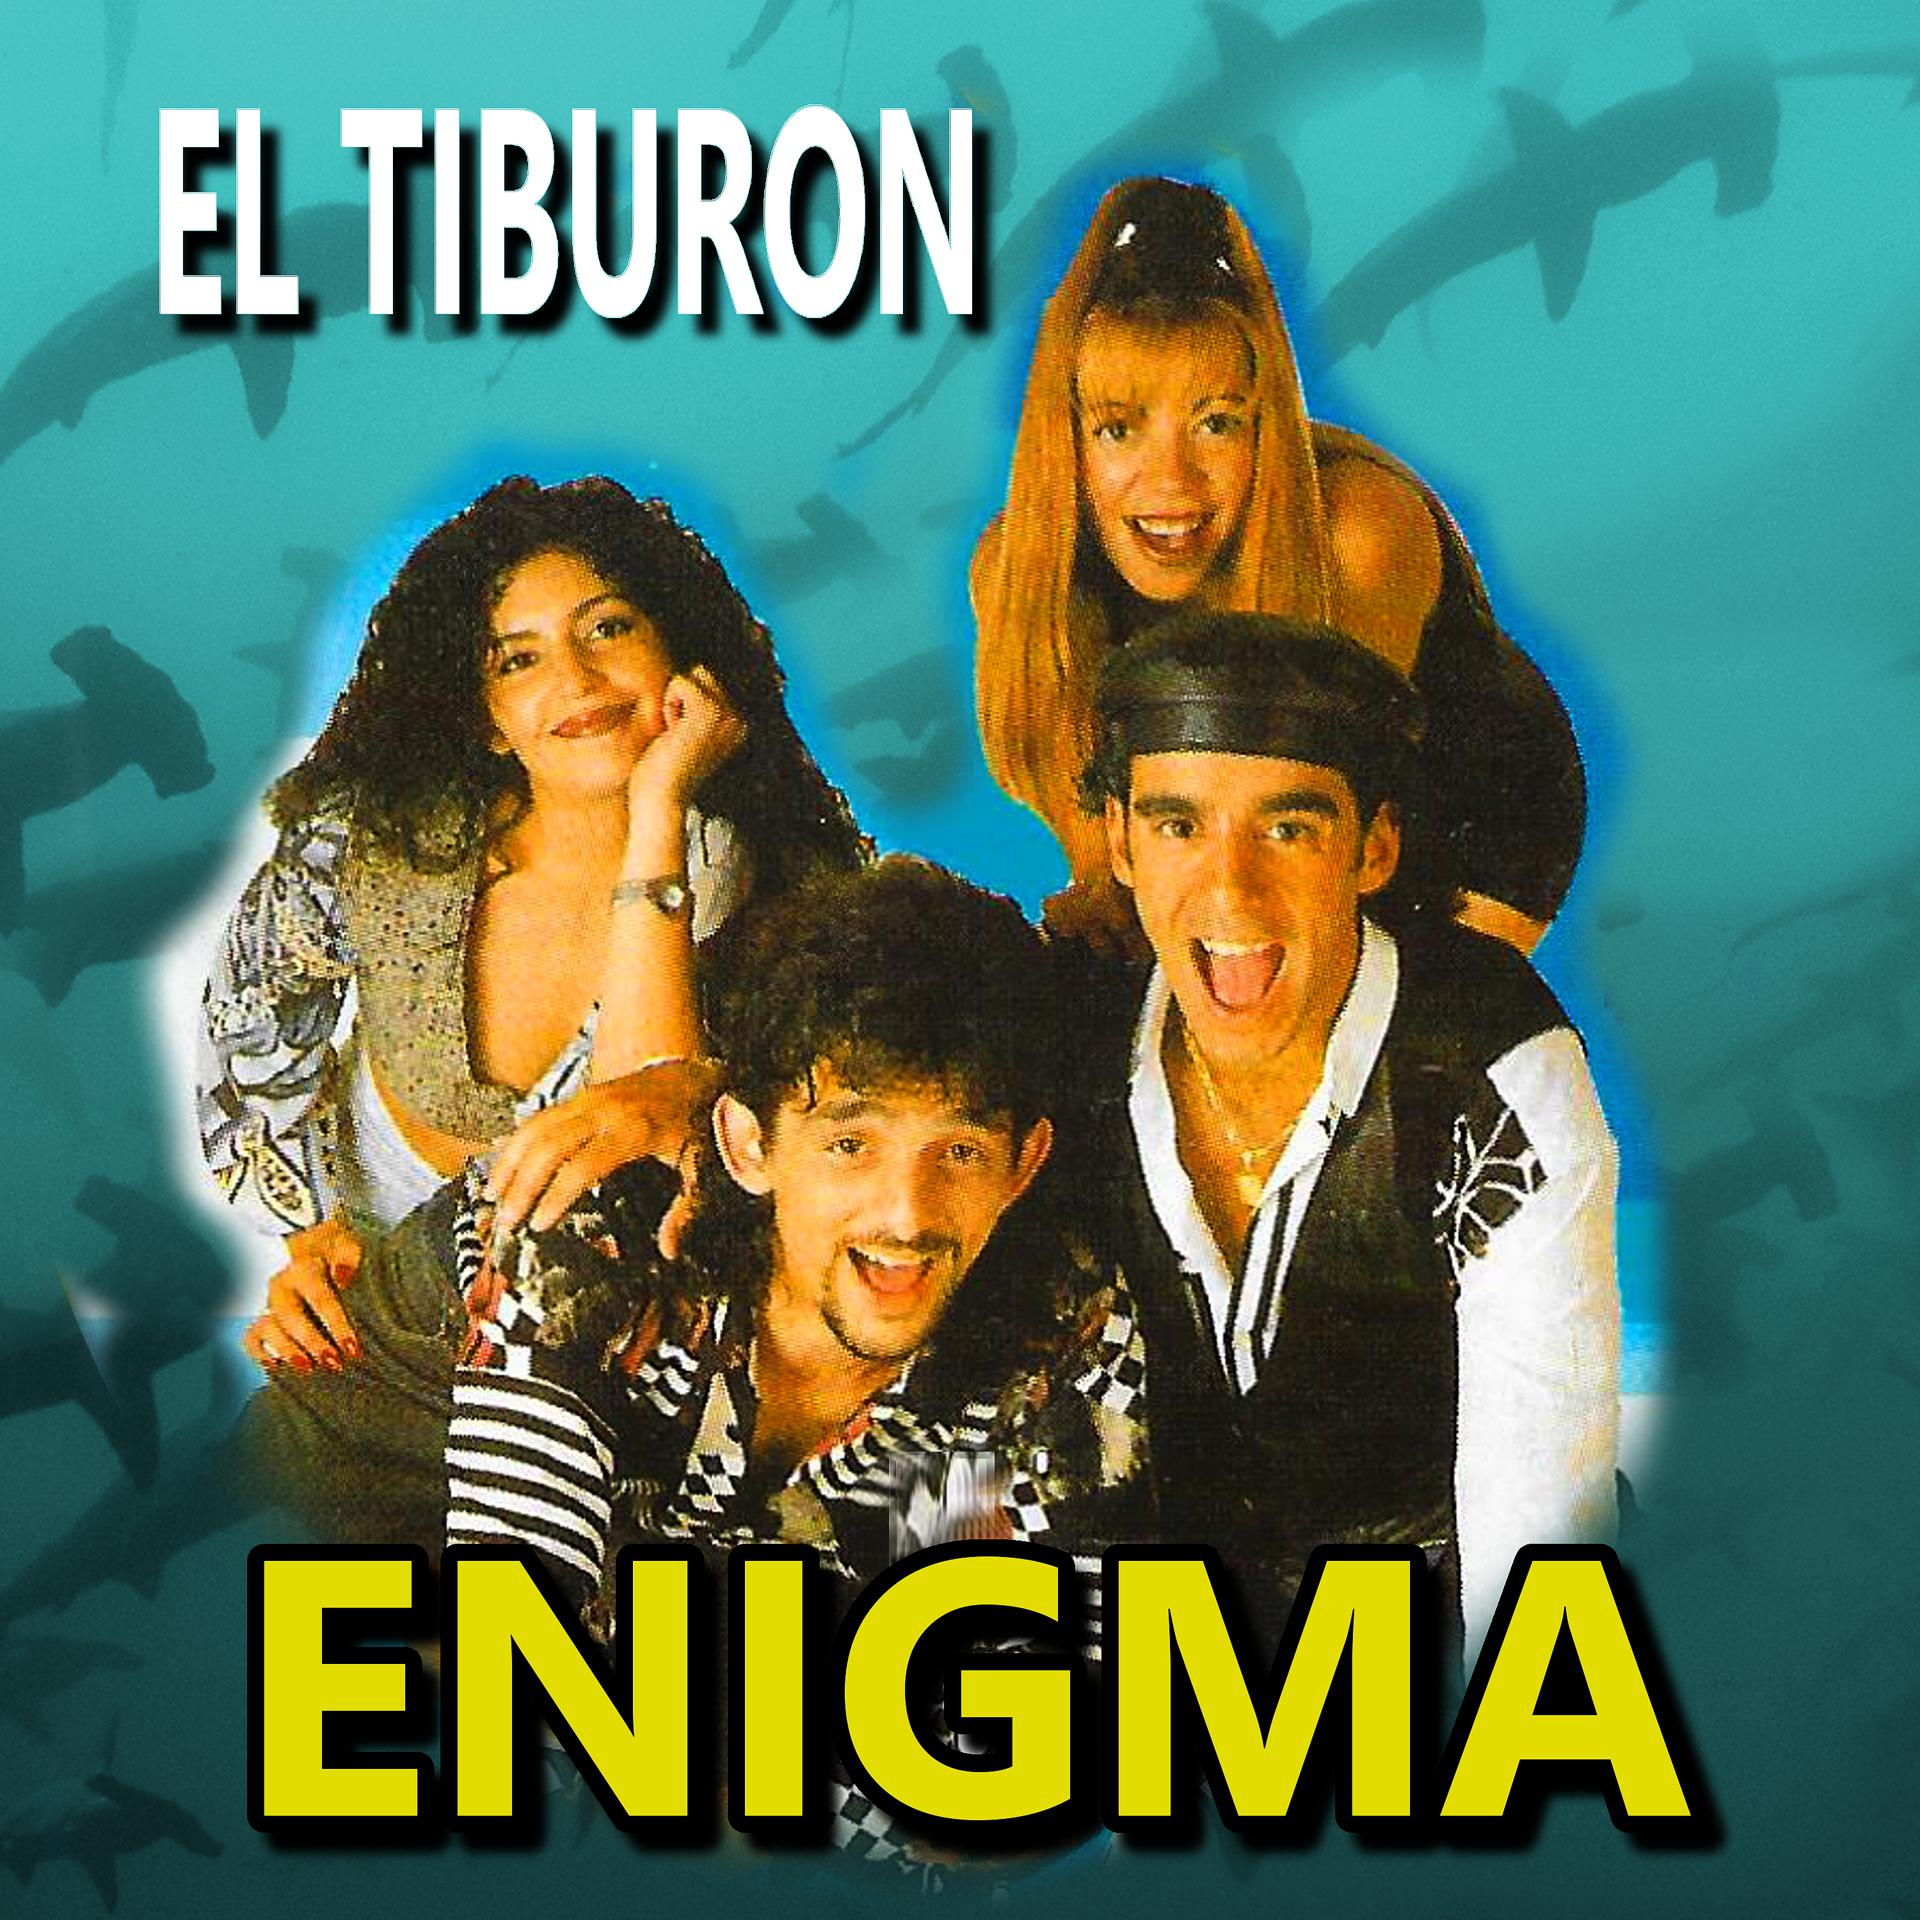 Слушать enigma в качестве. Enigma группа. Группа Enigma (музыкальный проект). Инигма1991год. Энигма лучшее.